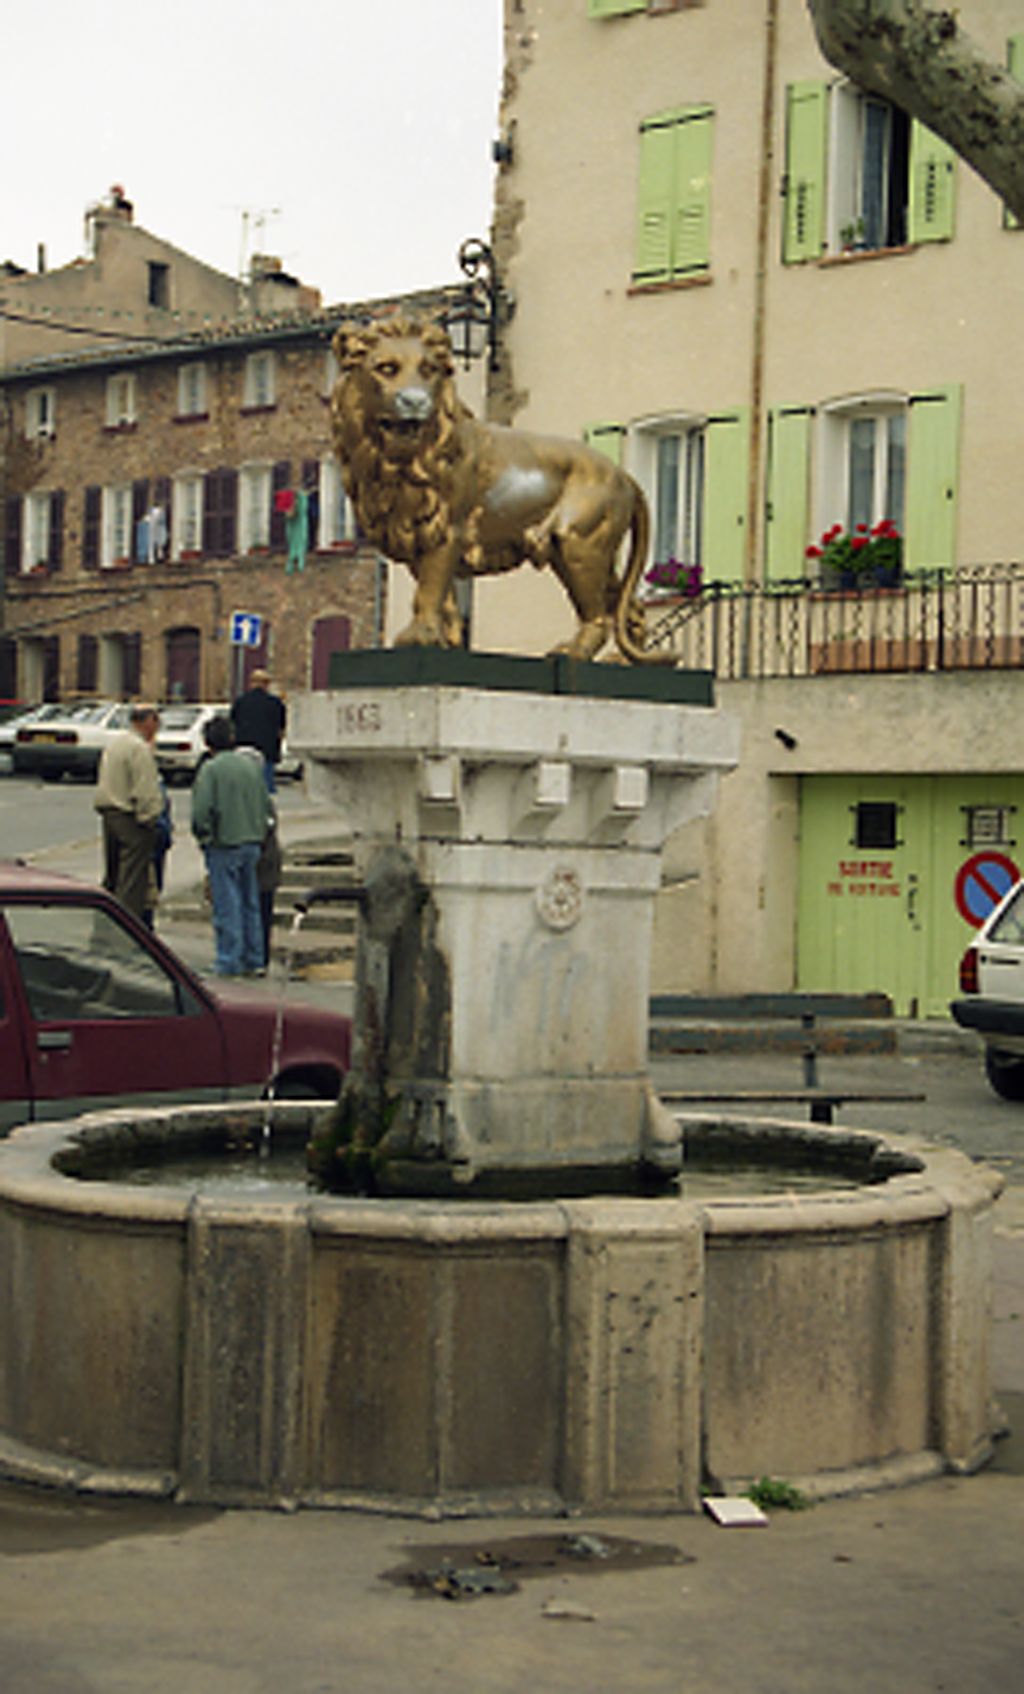 Fontaine dite Fontaine du Lion